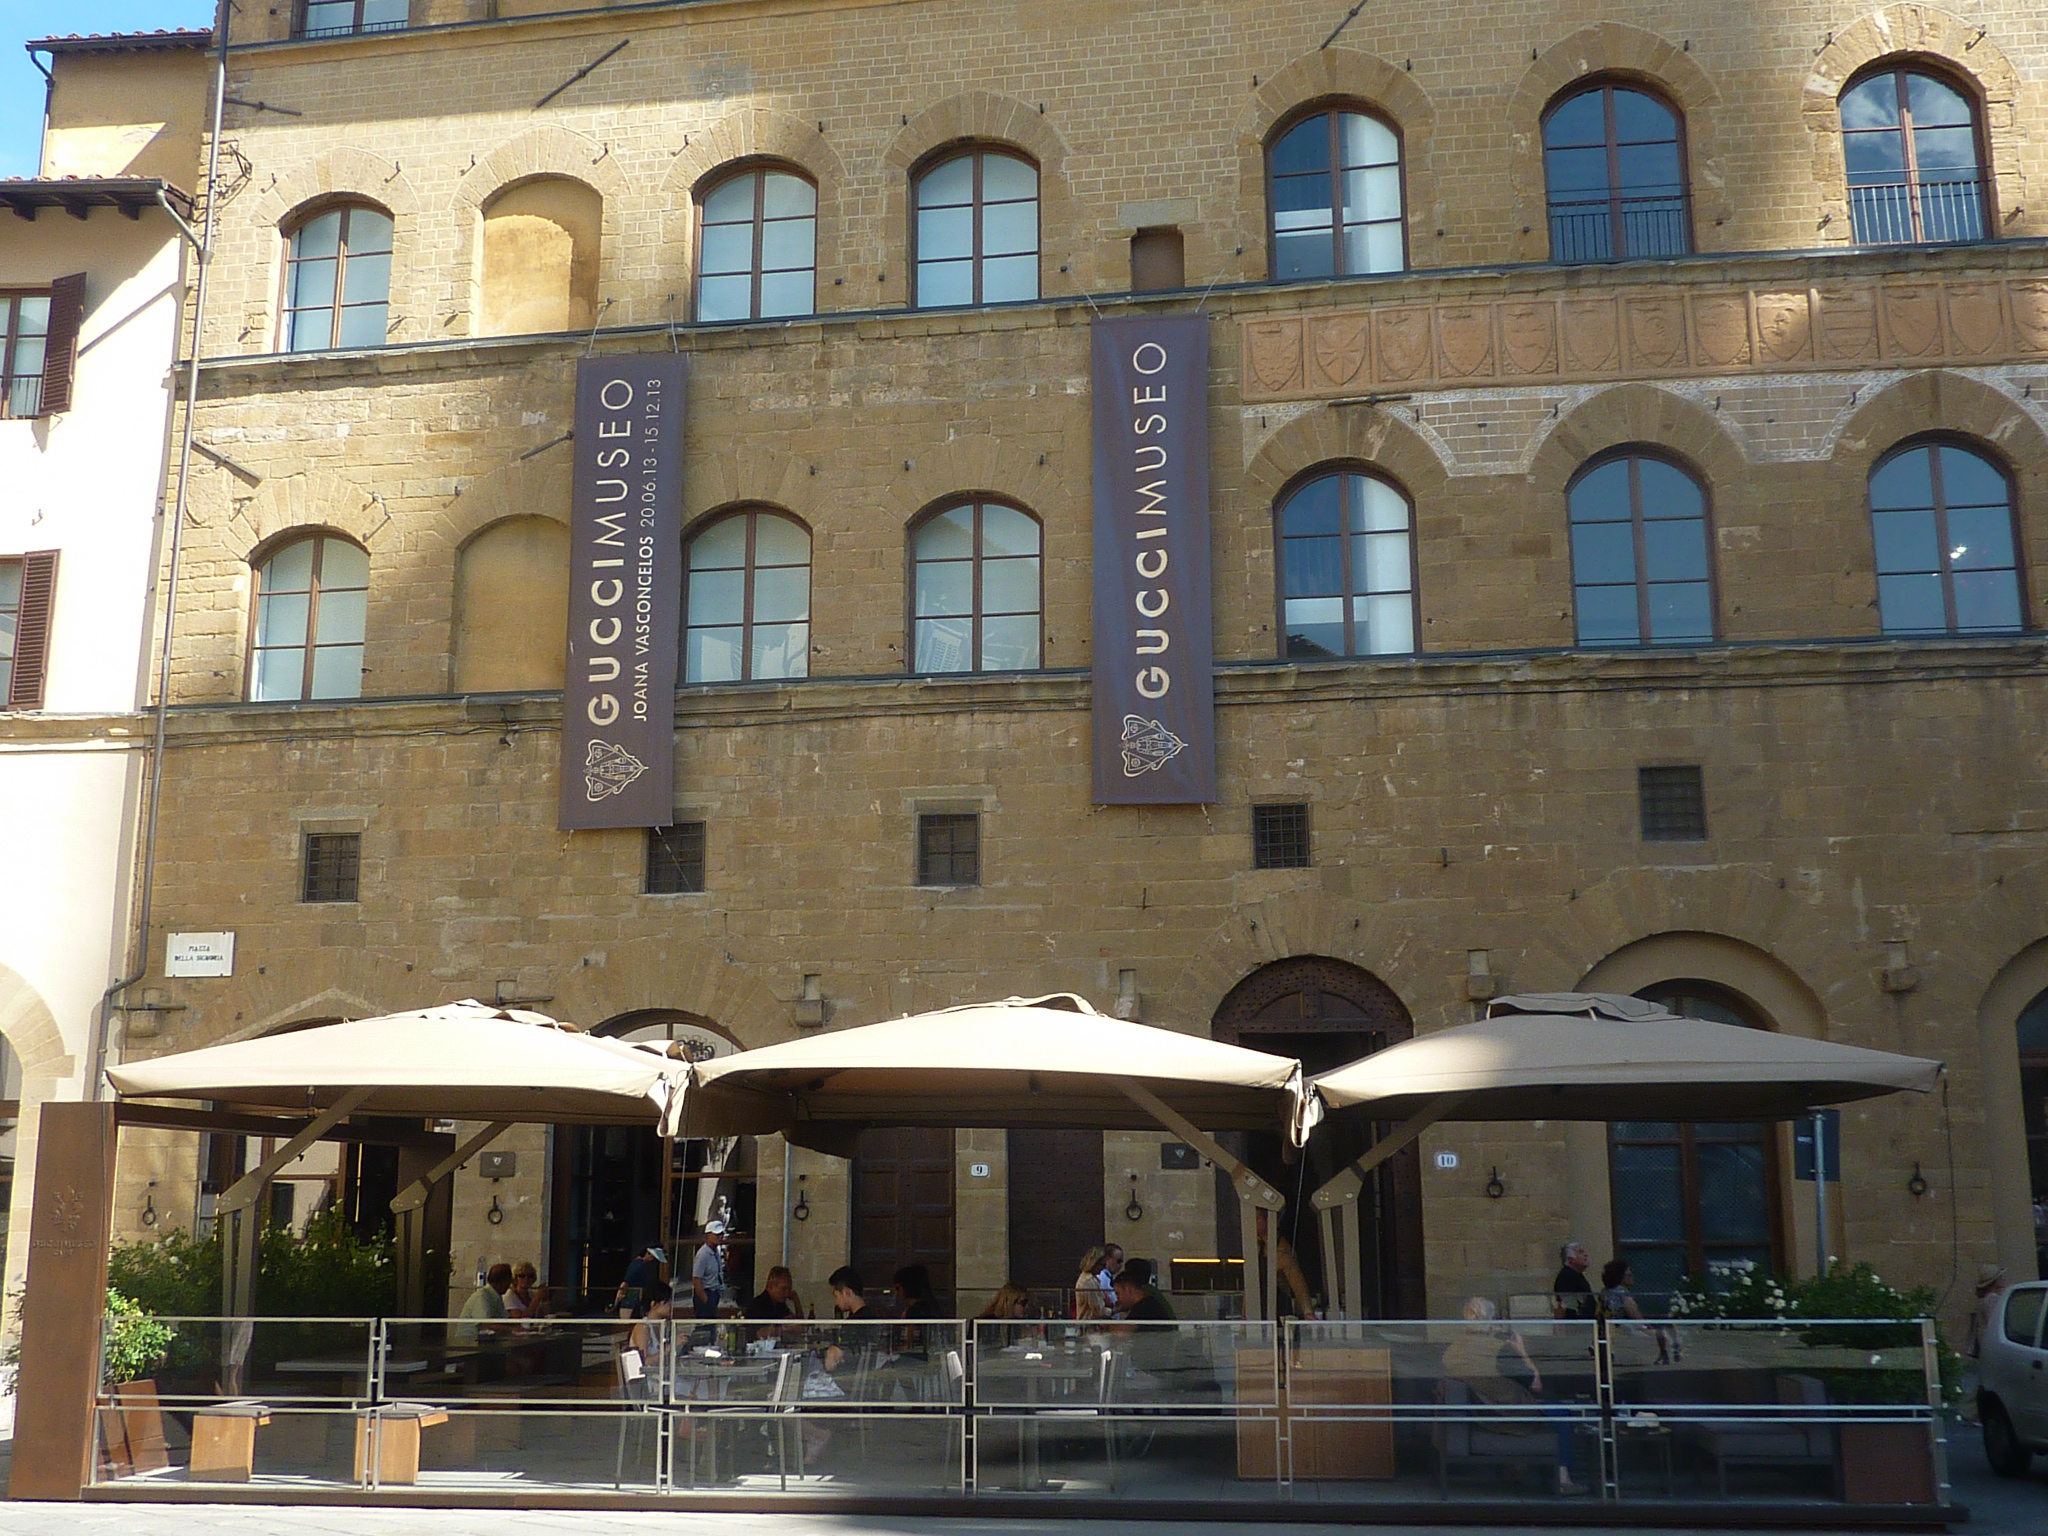 Uforglemmelig lindre foretrækkes Travel Tip: Gucci Museo + Restaurant Florence - Italian Allure Travel